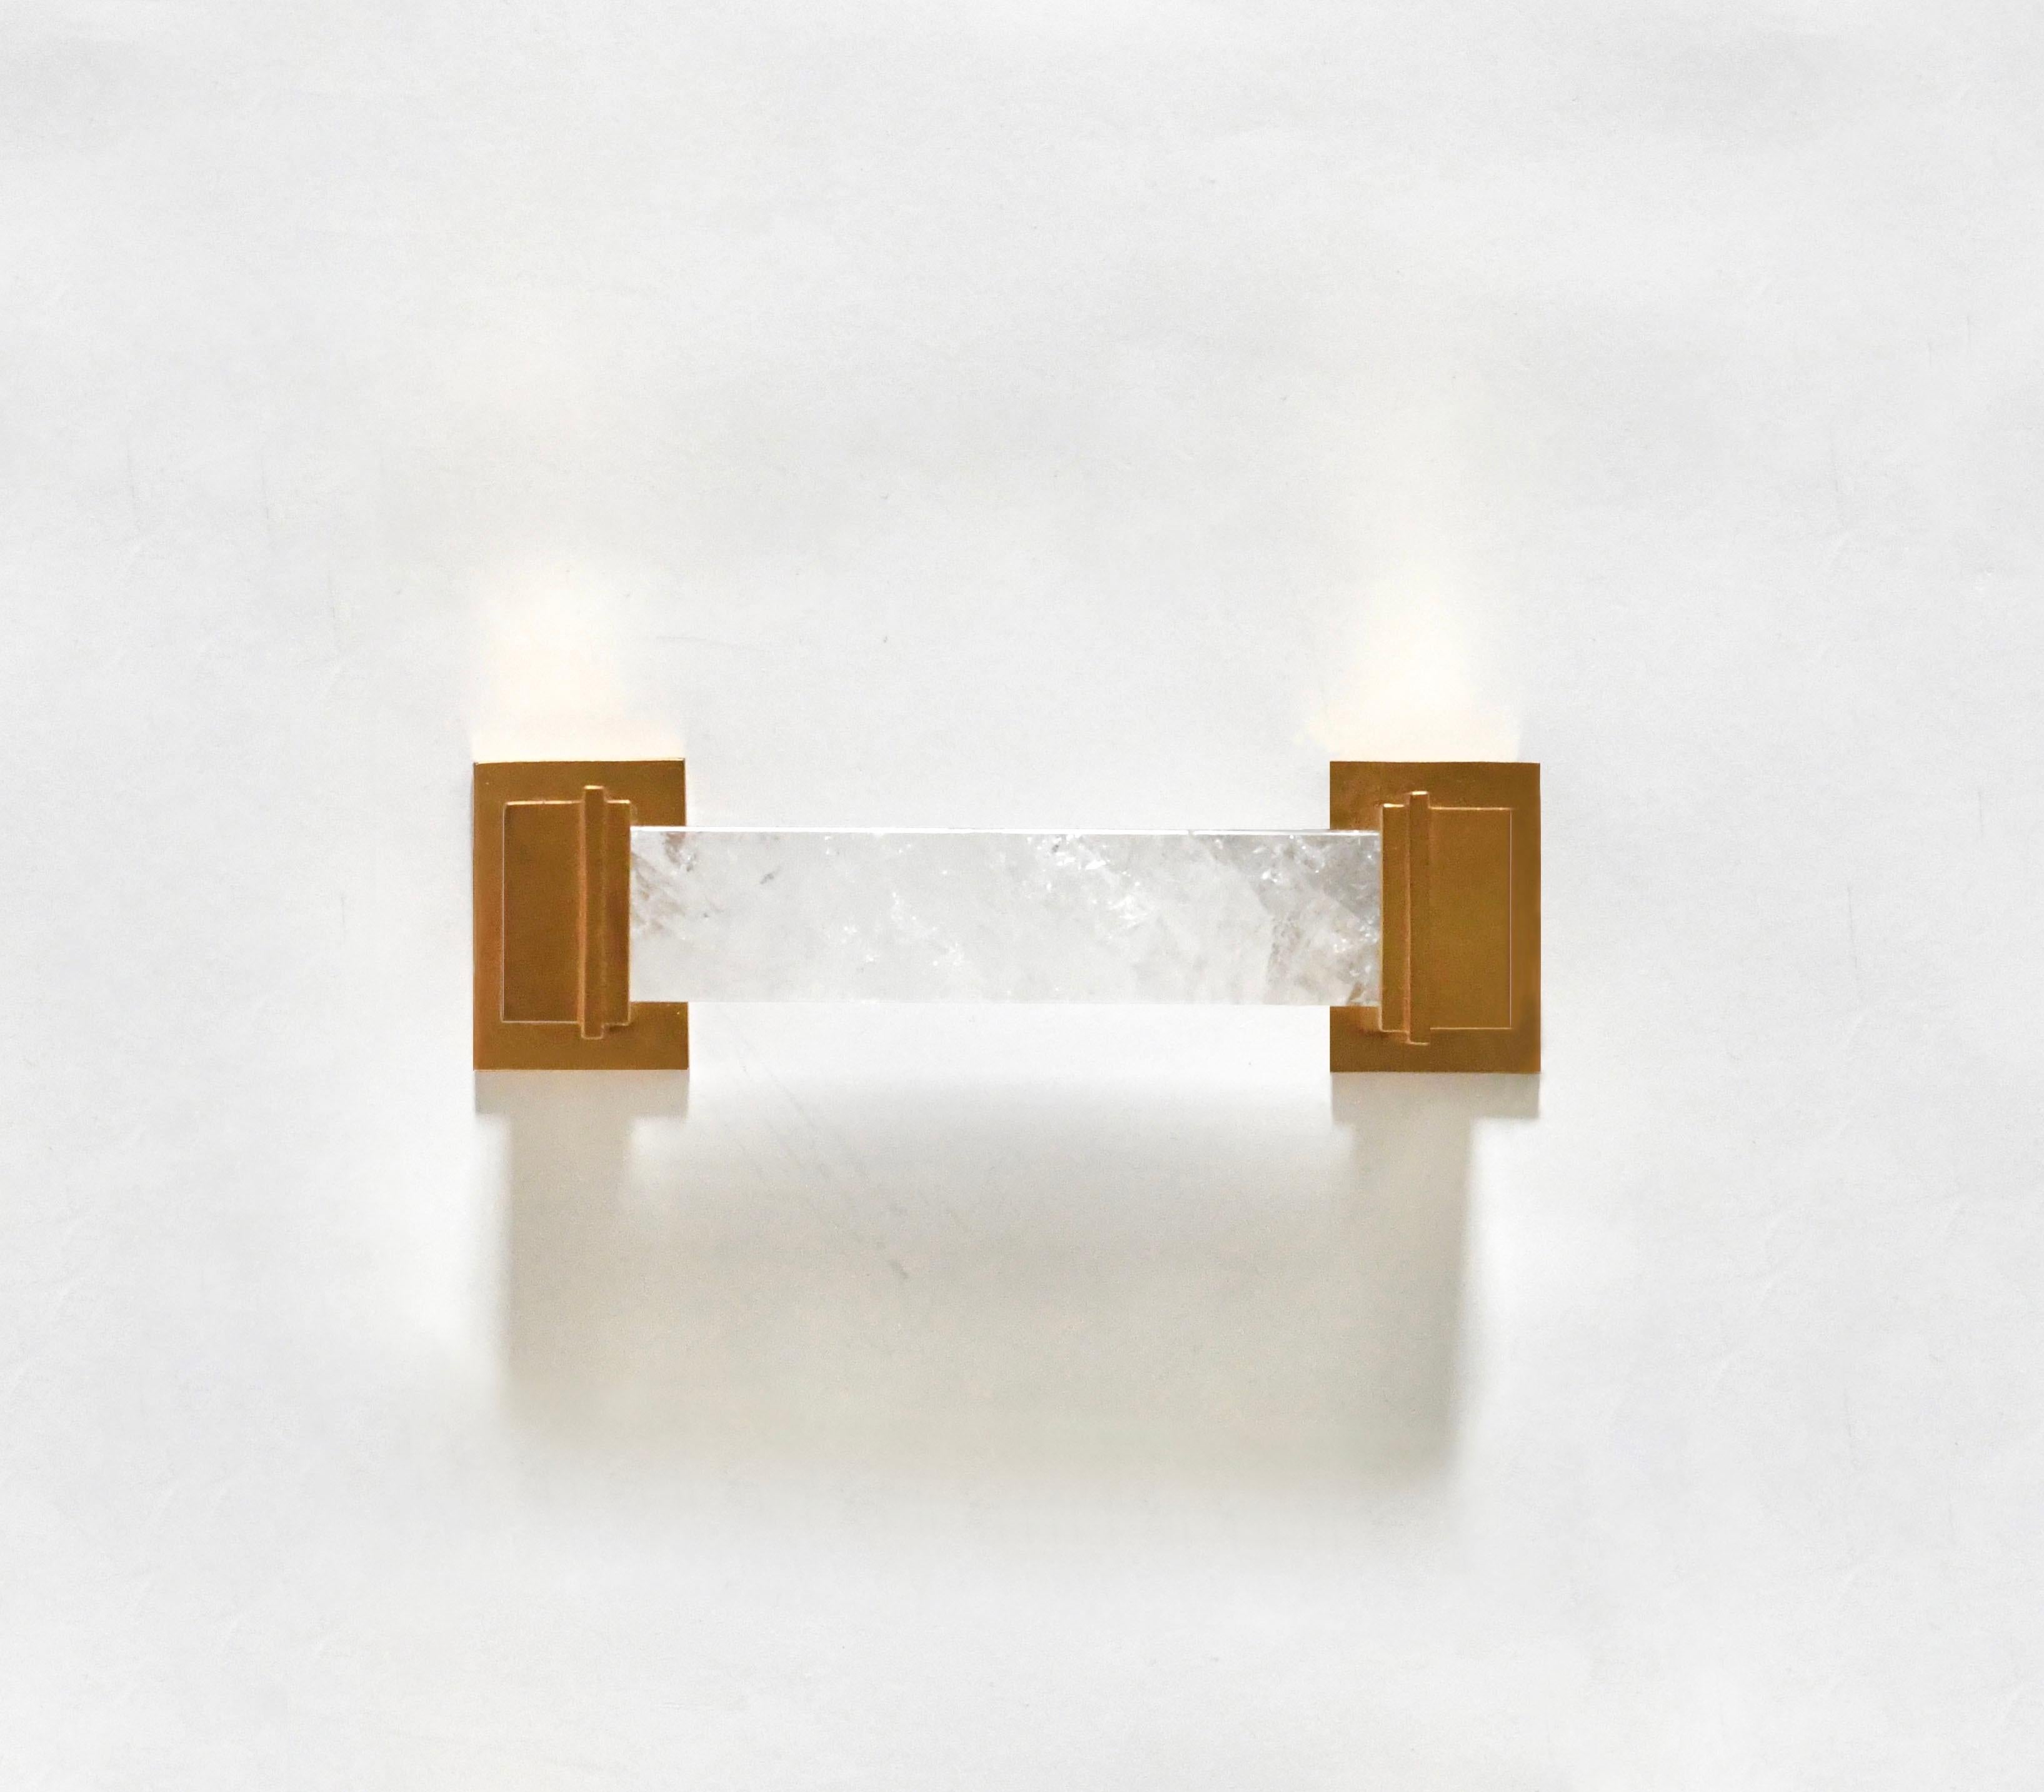 Une poignée de luxe en quartz de cristal de roche avec une finition plaquée or mat. Les plaques sous la poignée ont été conçues pour être fixées sur une surface en verre. Créé par Phoenix Gallery, NYC.
Taille et finition métallique personnalisées